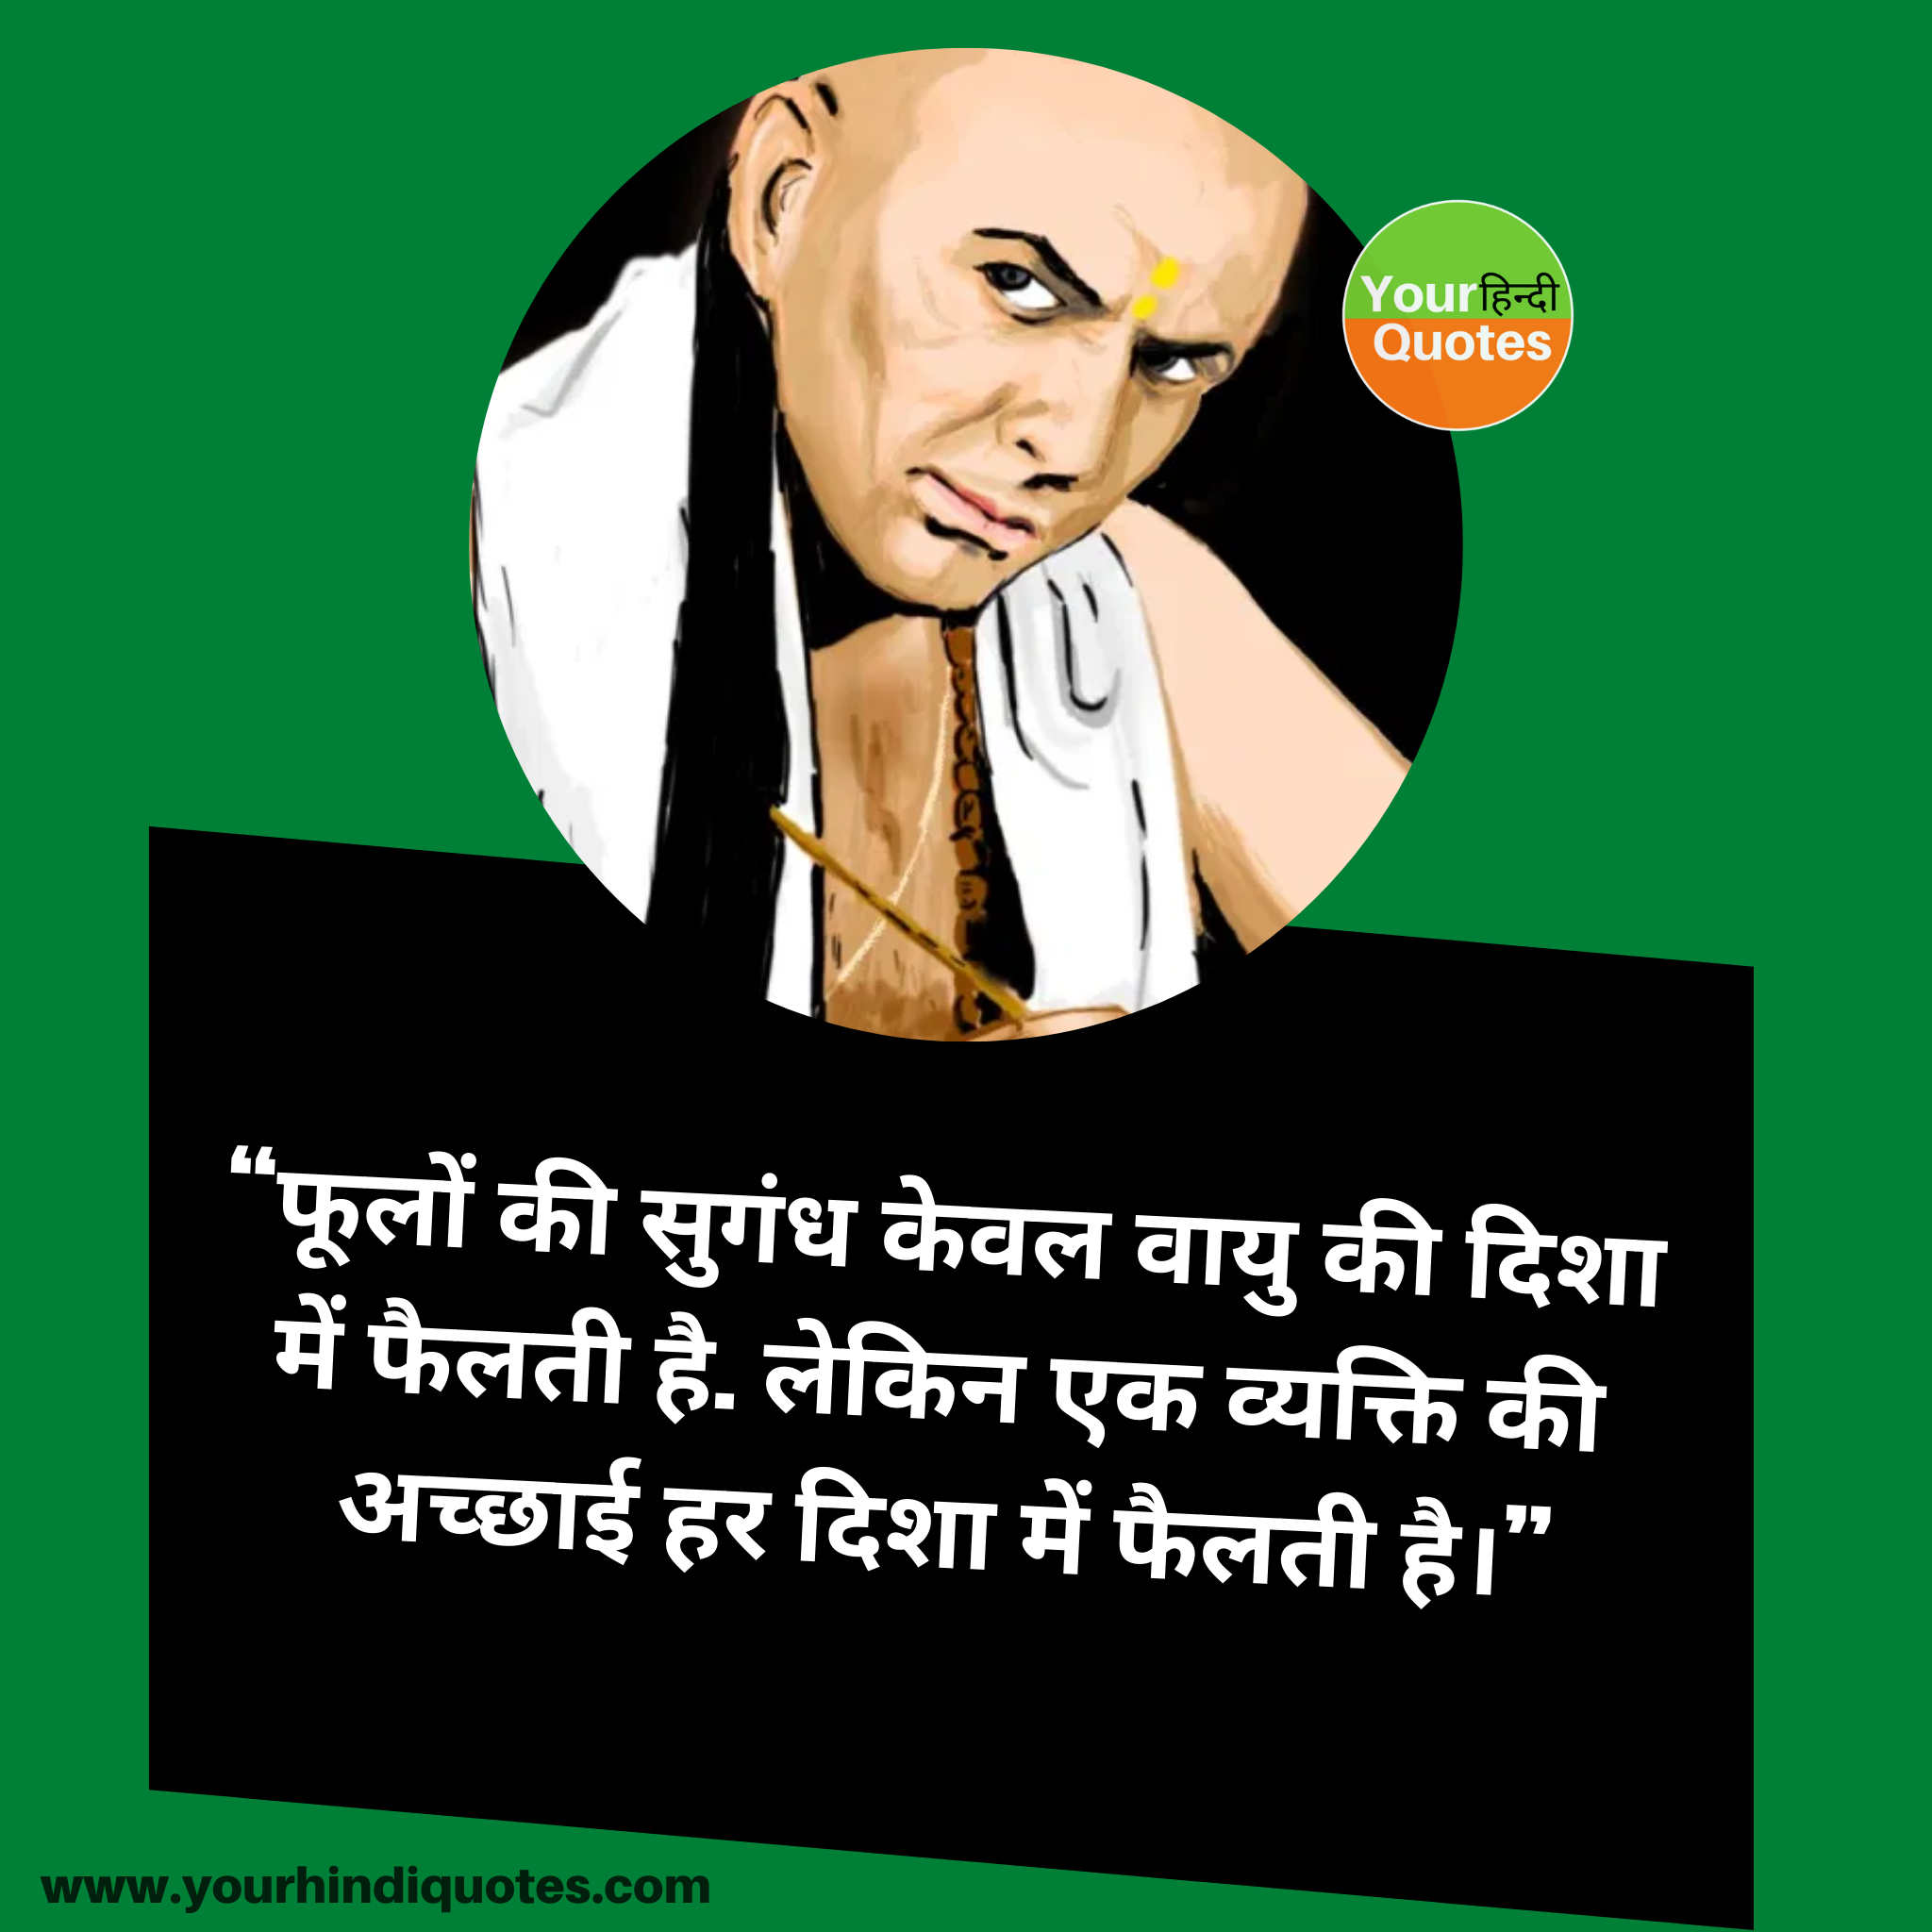 Chanakya Niti Hindi Quotes Image